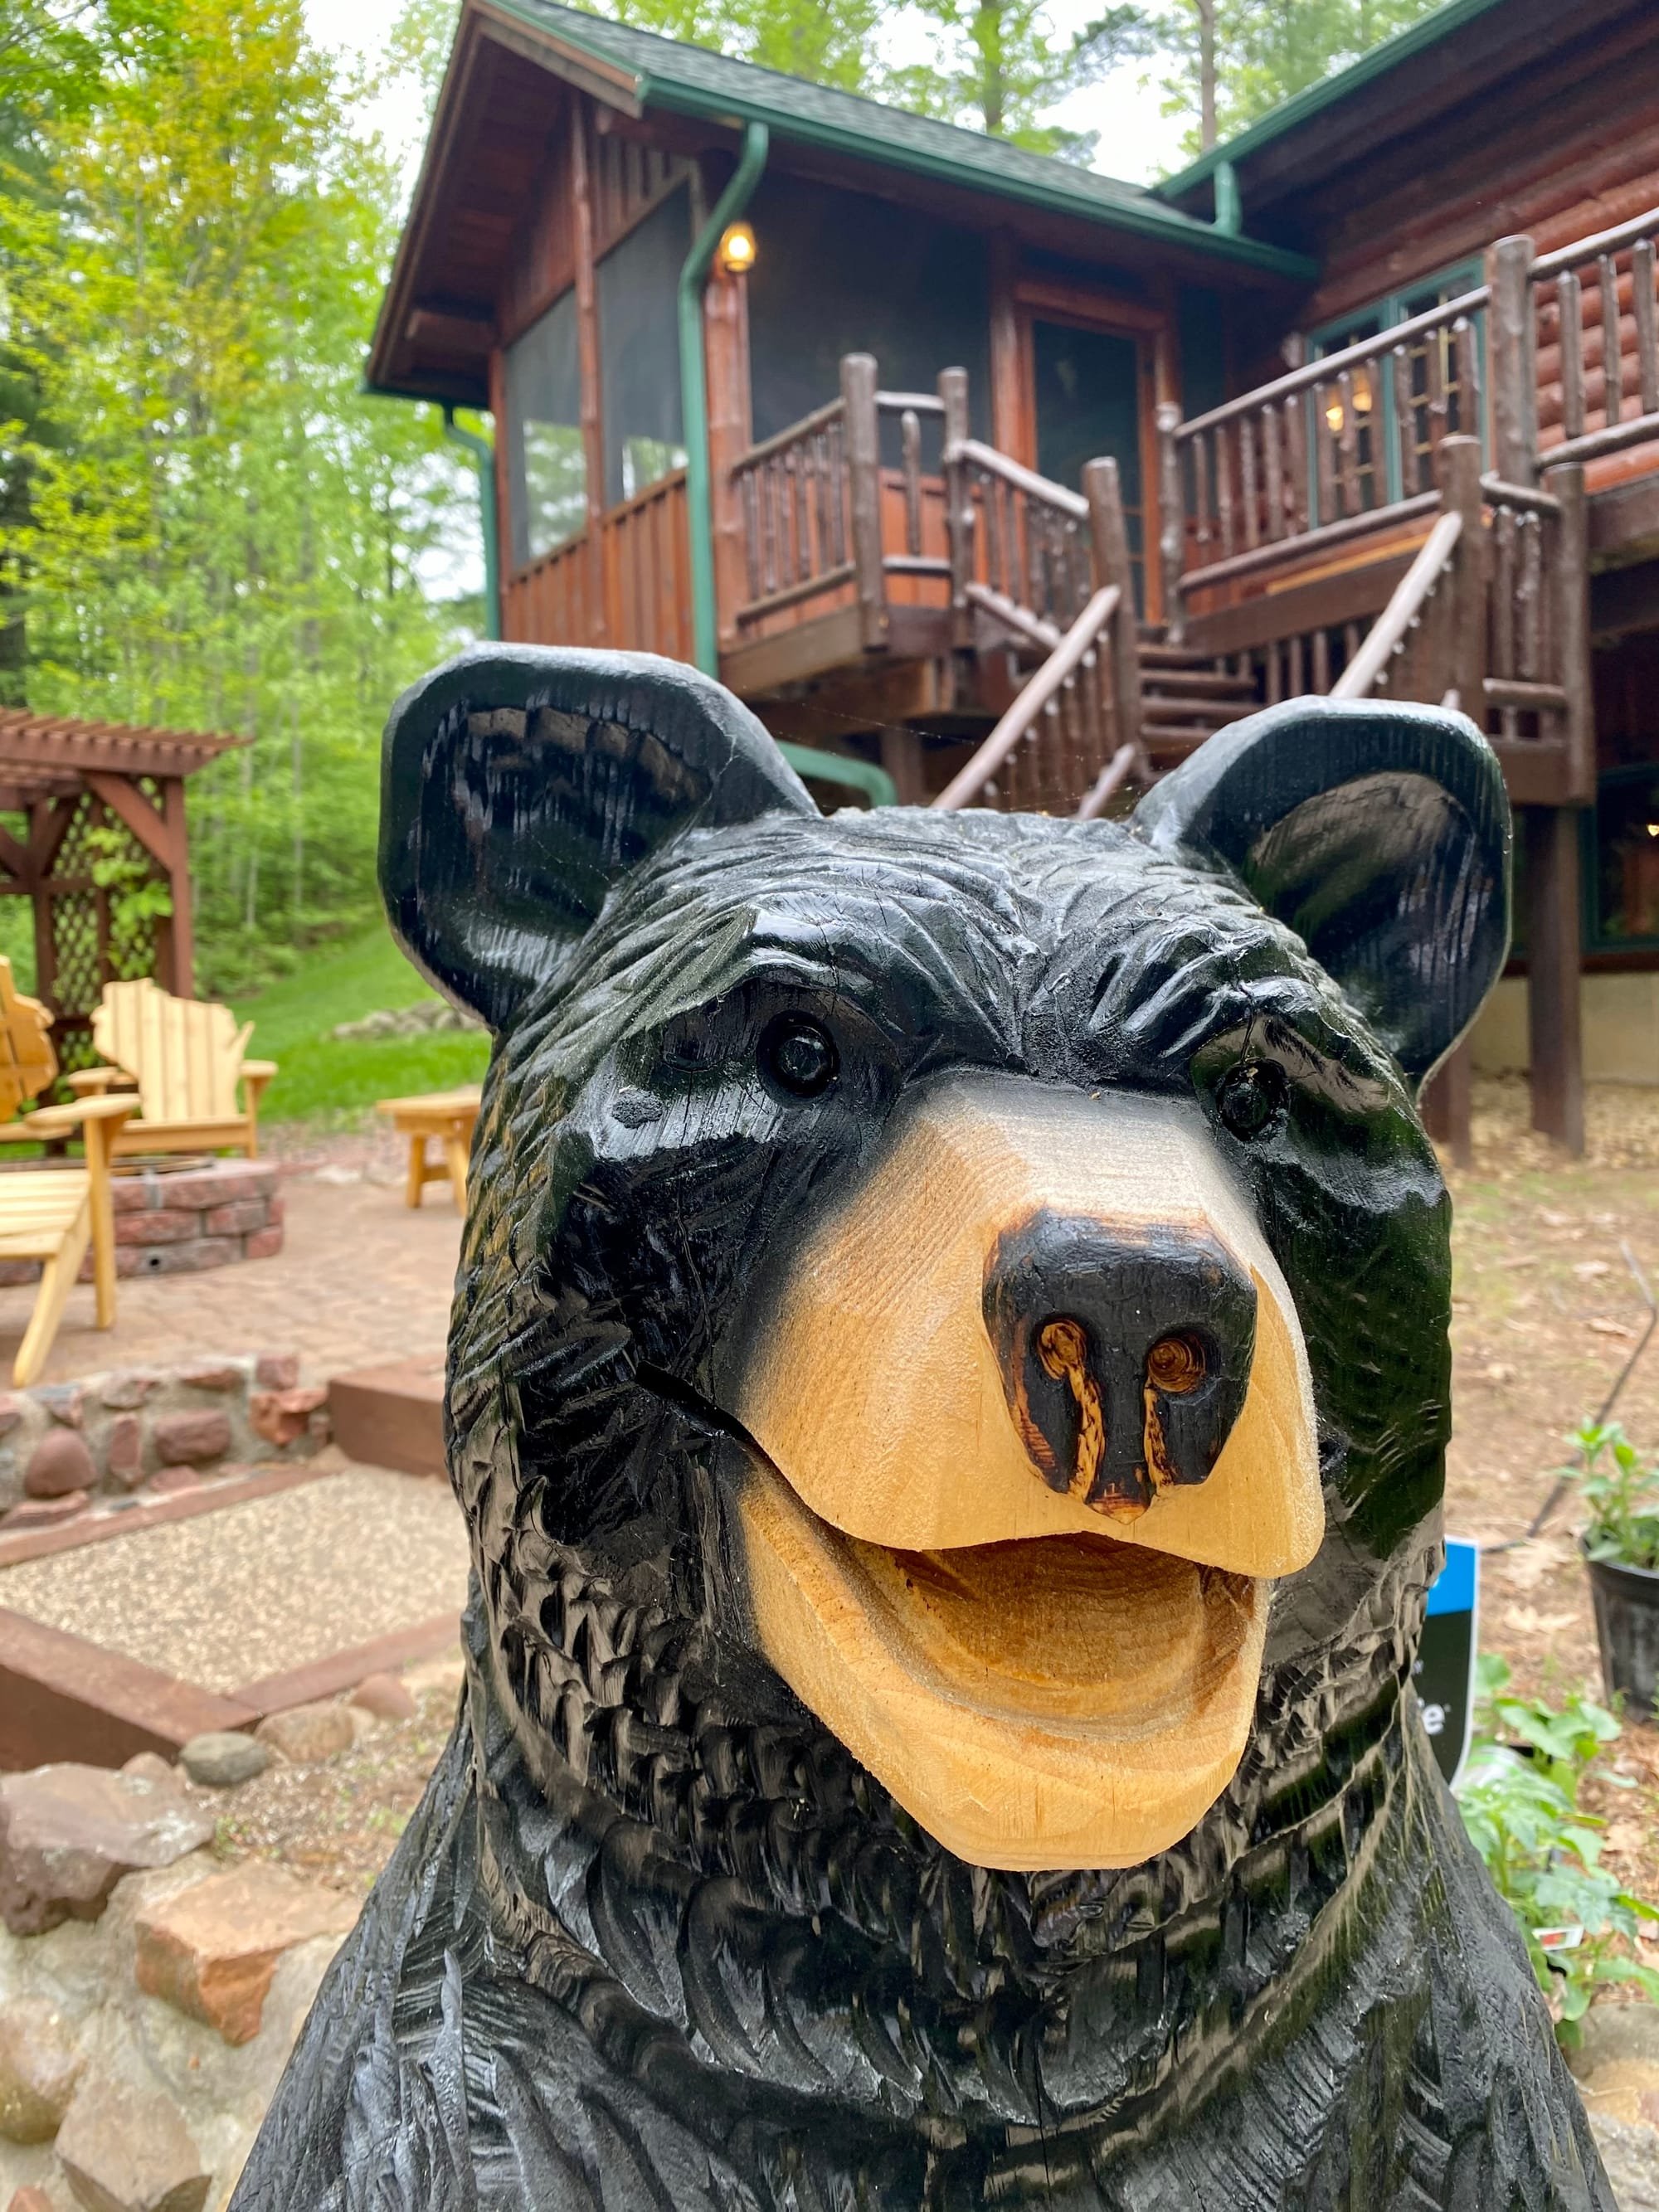 Wisco Bear, Selfie station